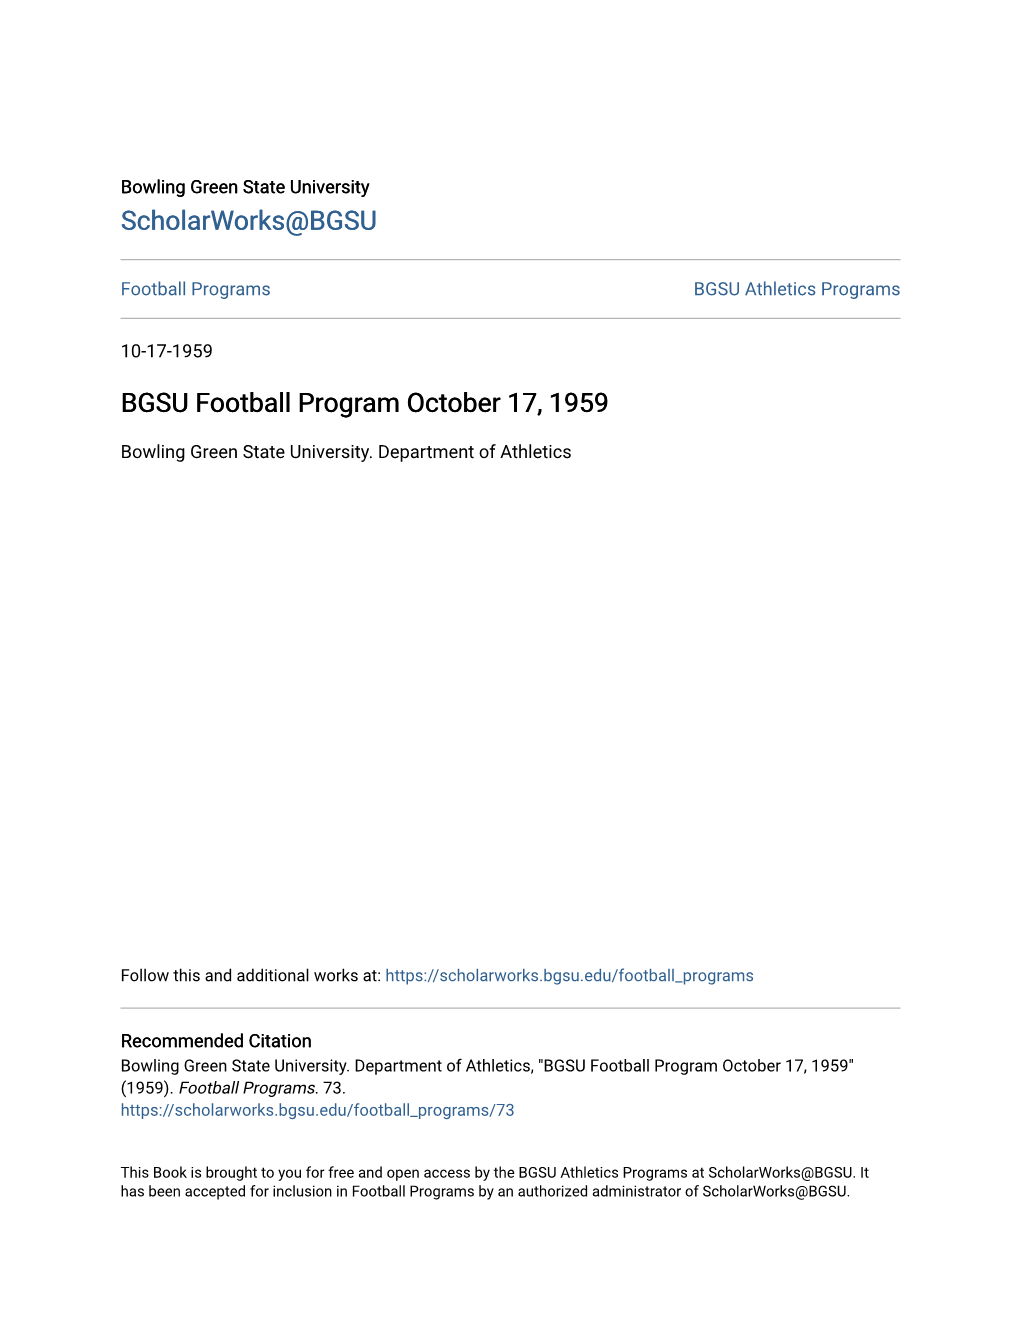 BGSU Football Program October 17, 1959